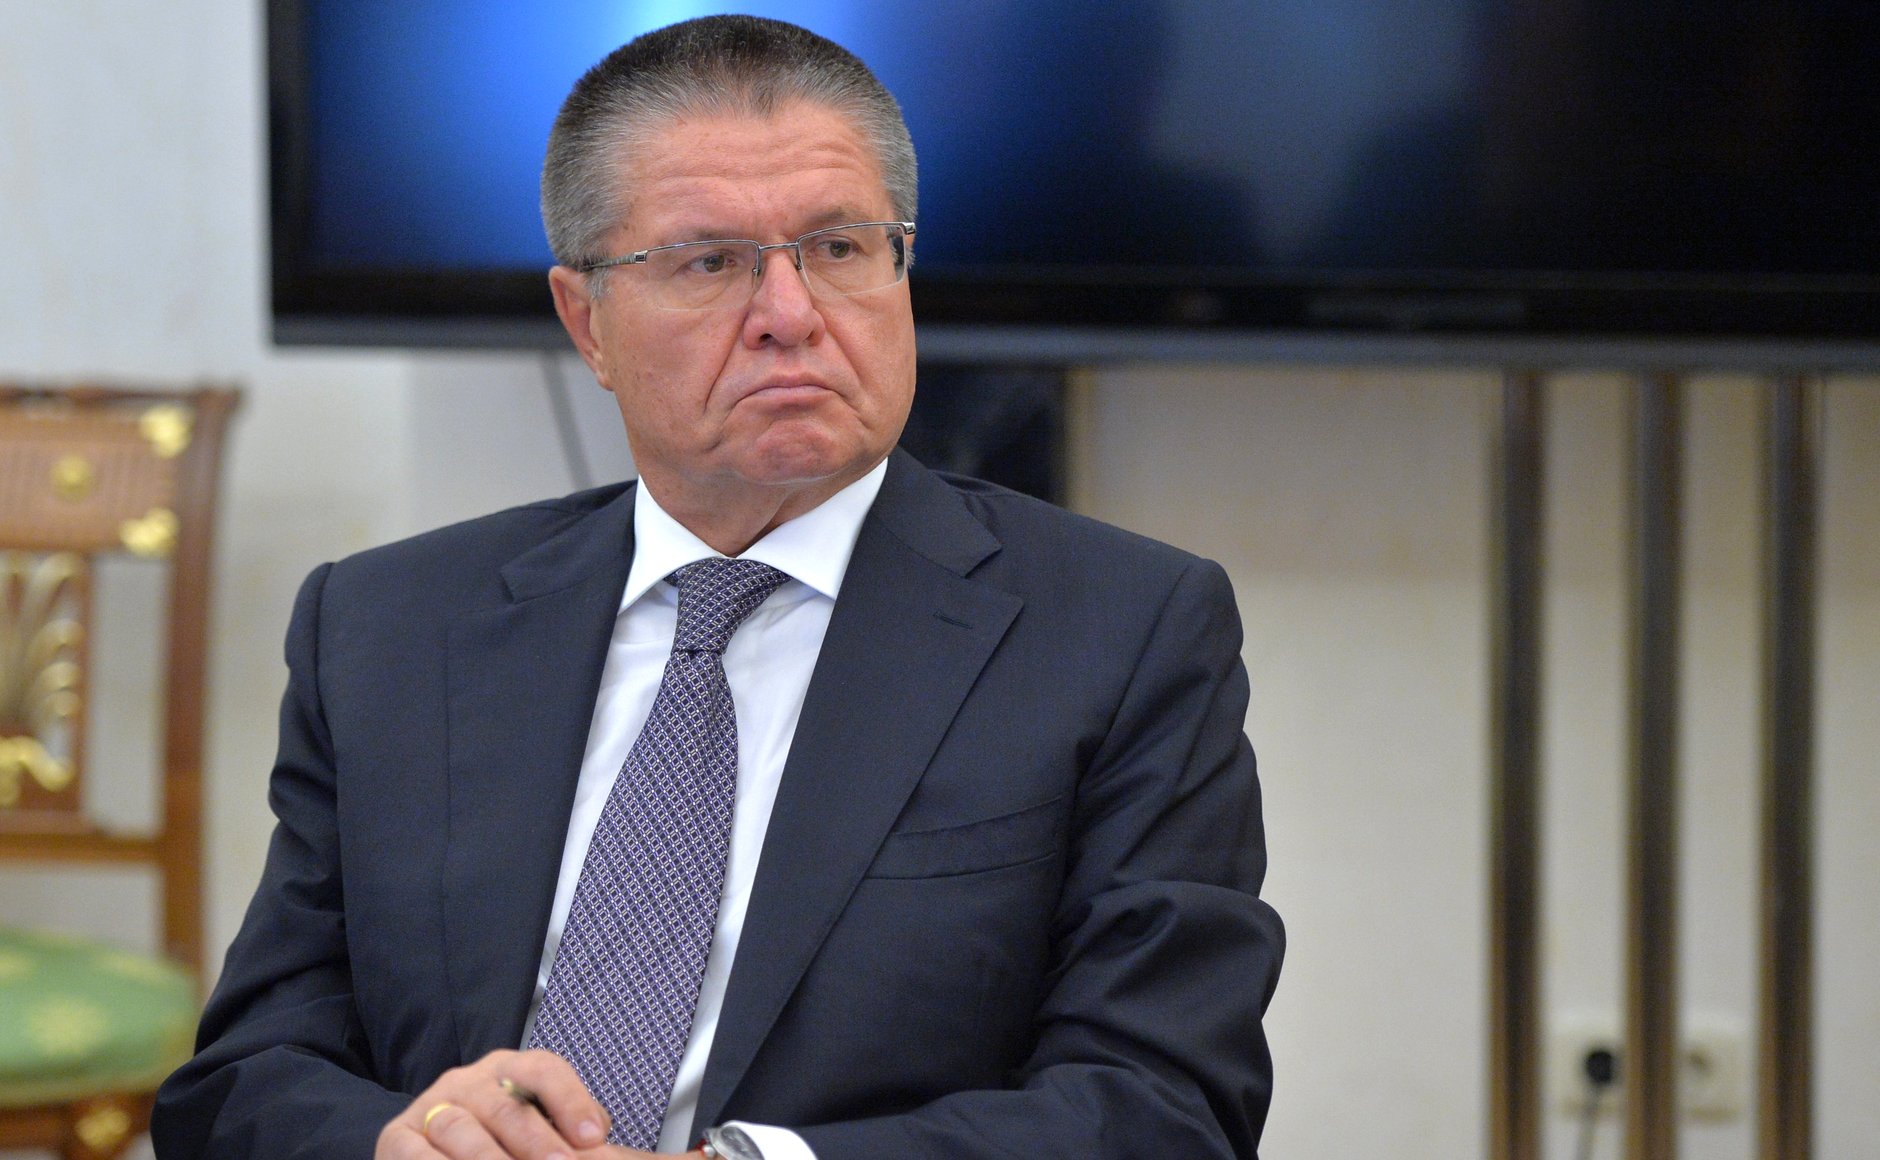 Uljukajew ist der bislang hochrangigste Politiker Russlands, der seit 1991 verhaftet wurde.